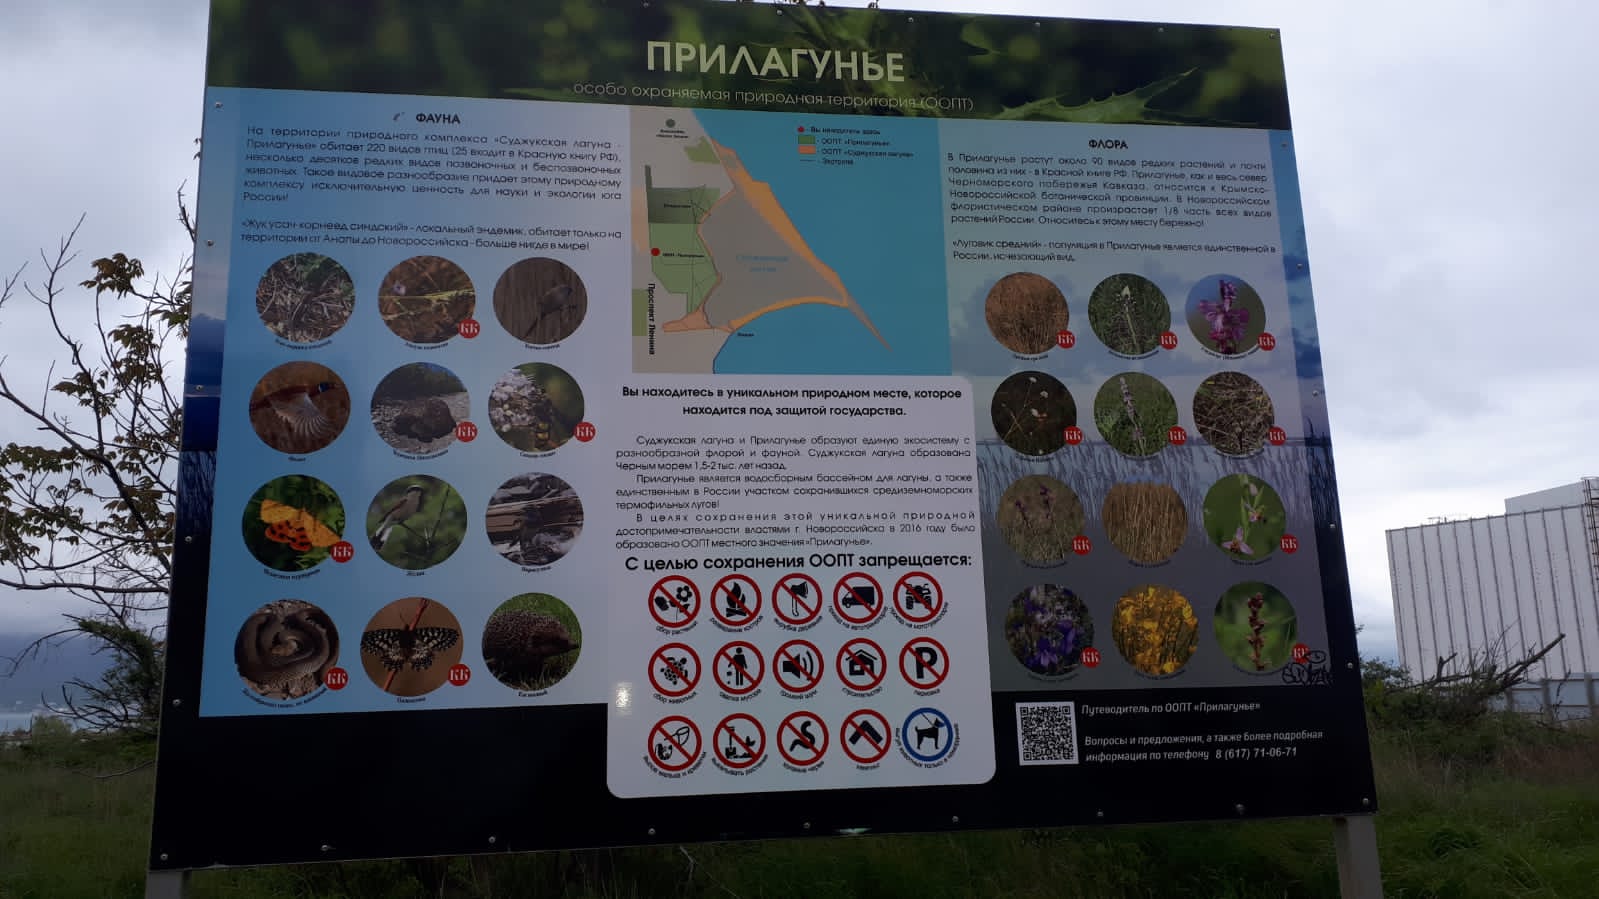 Оставили след: школьники исписали щит на Особо охраняемой природной территории Новороссийска